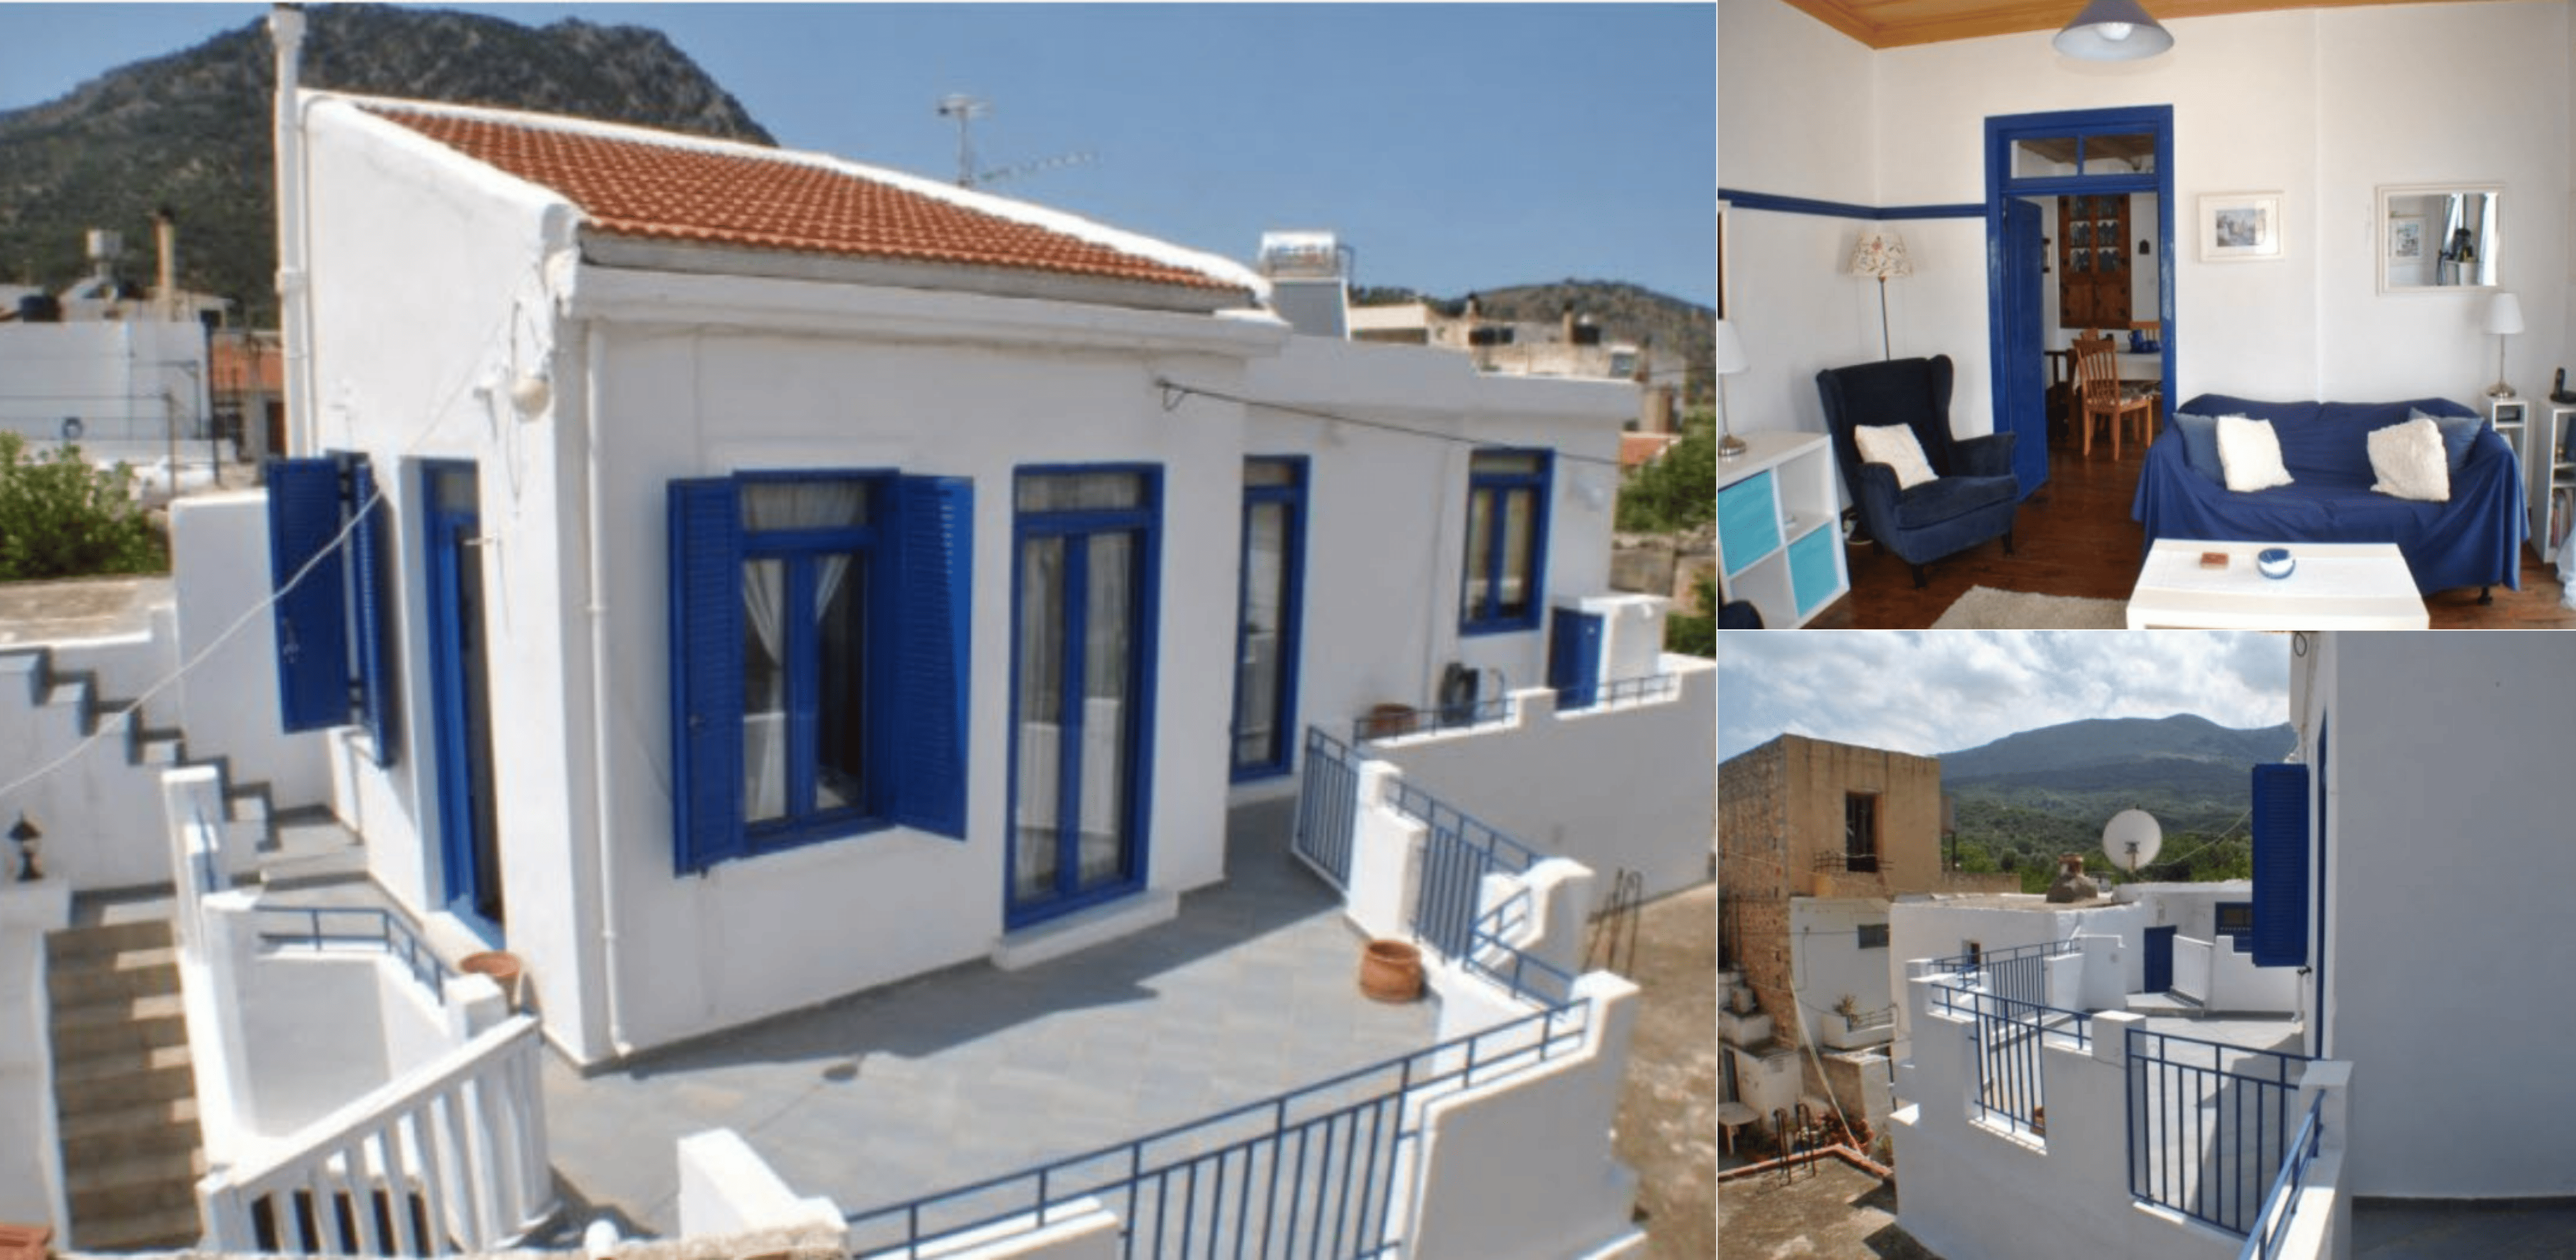 House in Crete